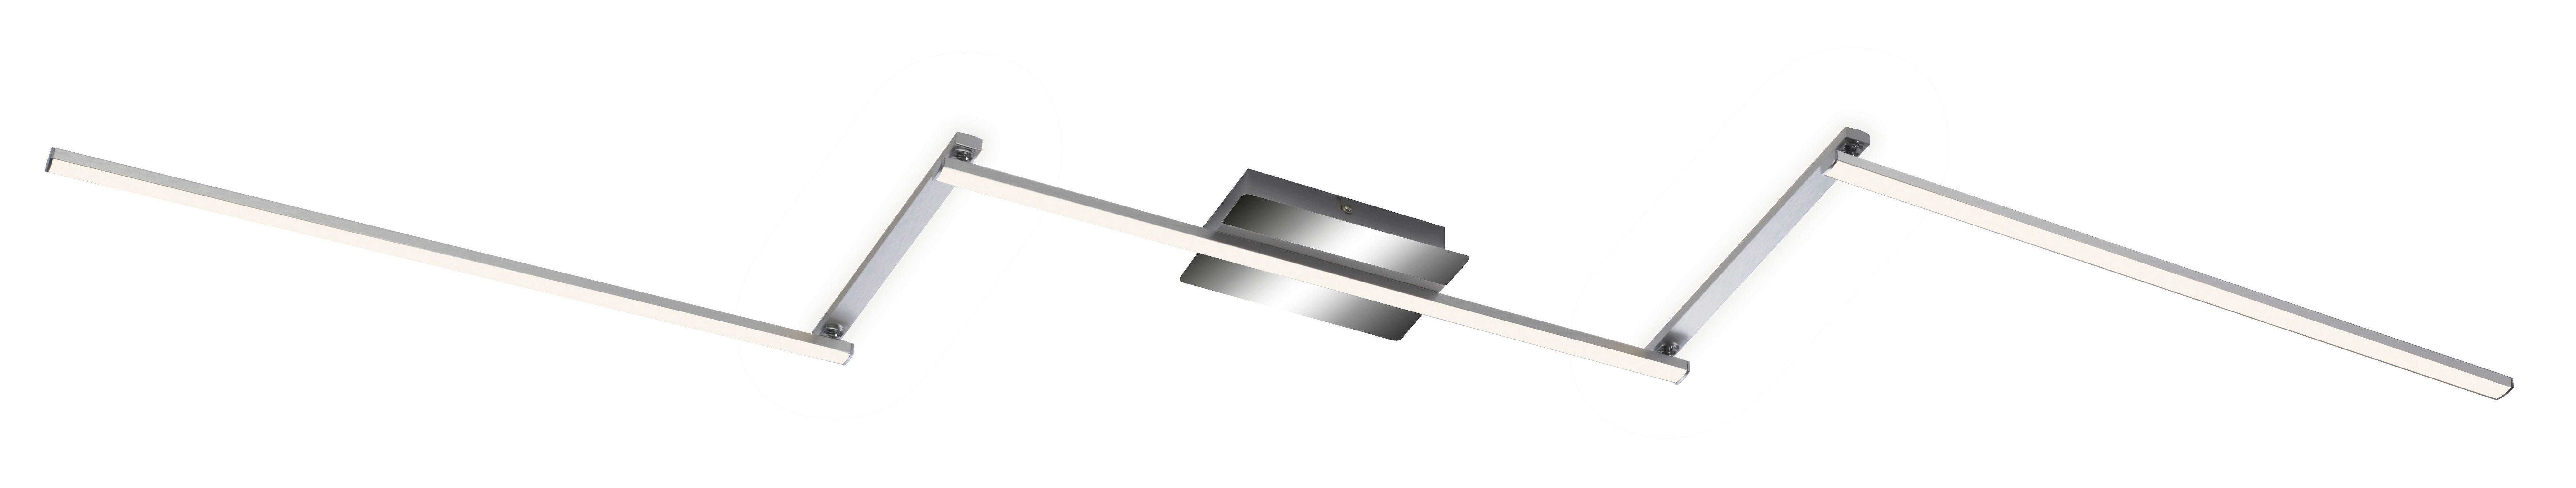 LED-DECKENLEUCHTE STAFF 227,2/12,0/5 cm   - Chromfarben, Design, Metall (227,2/12,0/5cm)